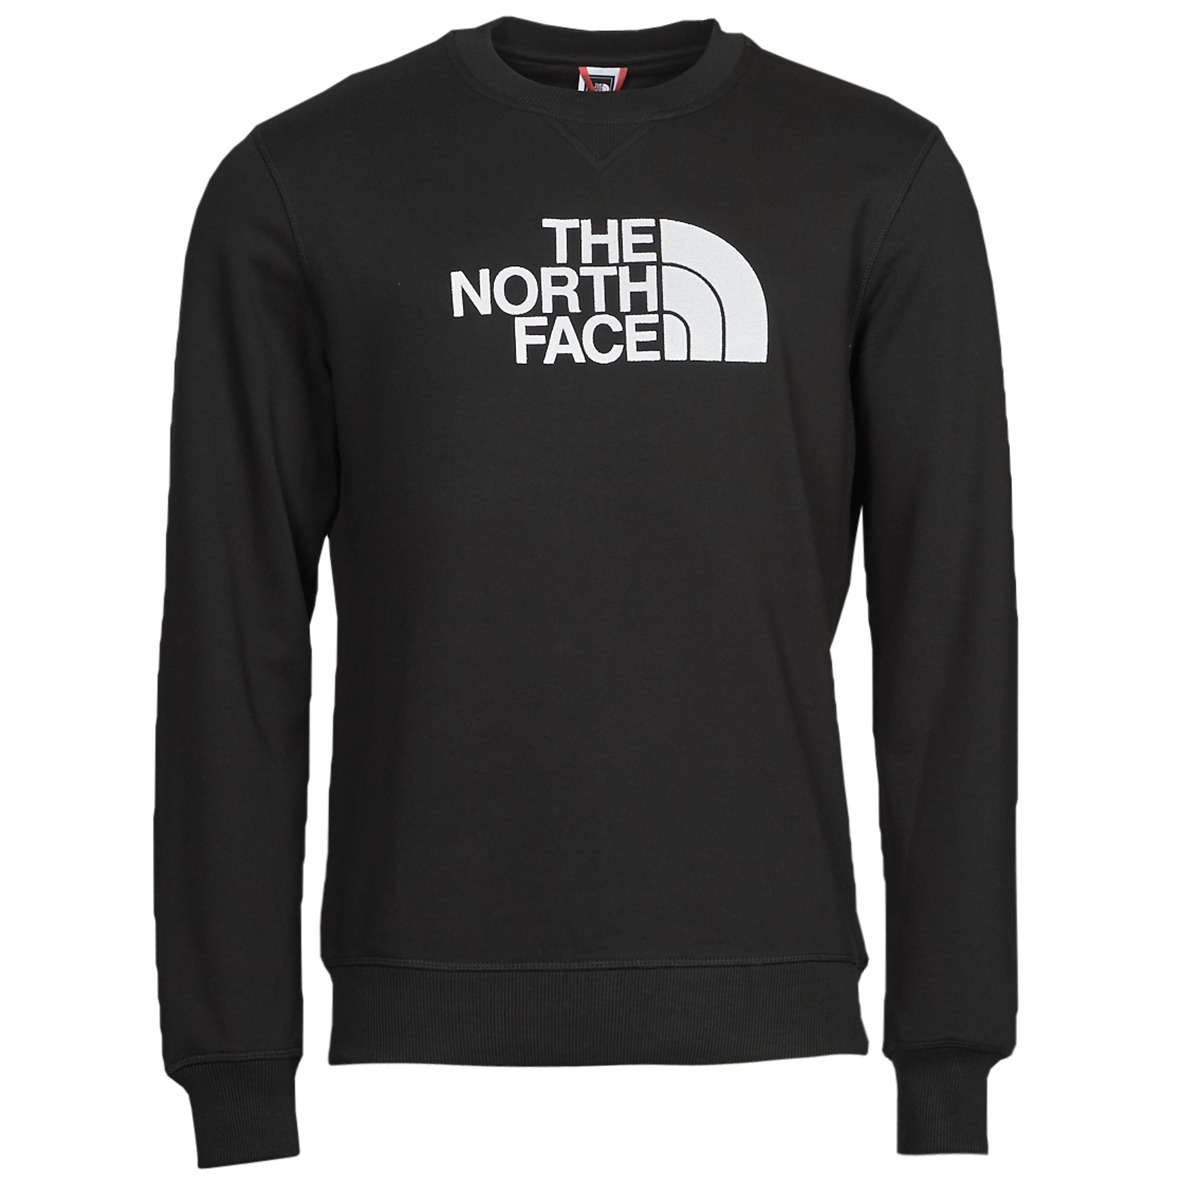 The North Face / trui Drew Peak Crew in zwart